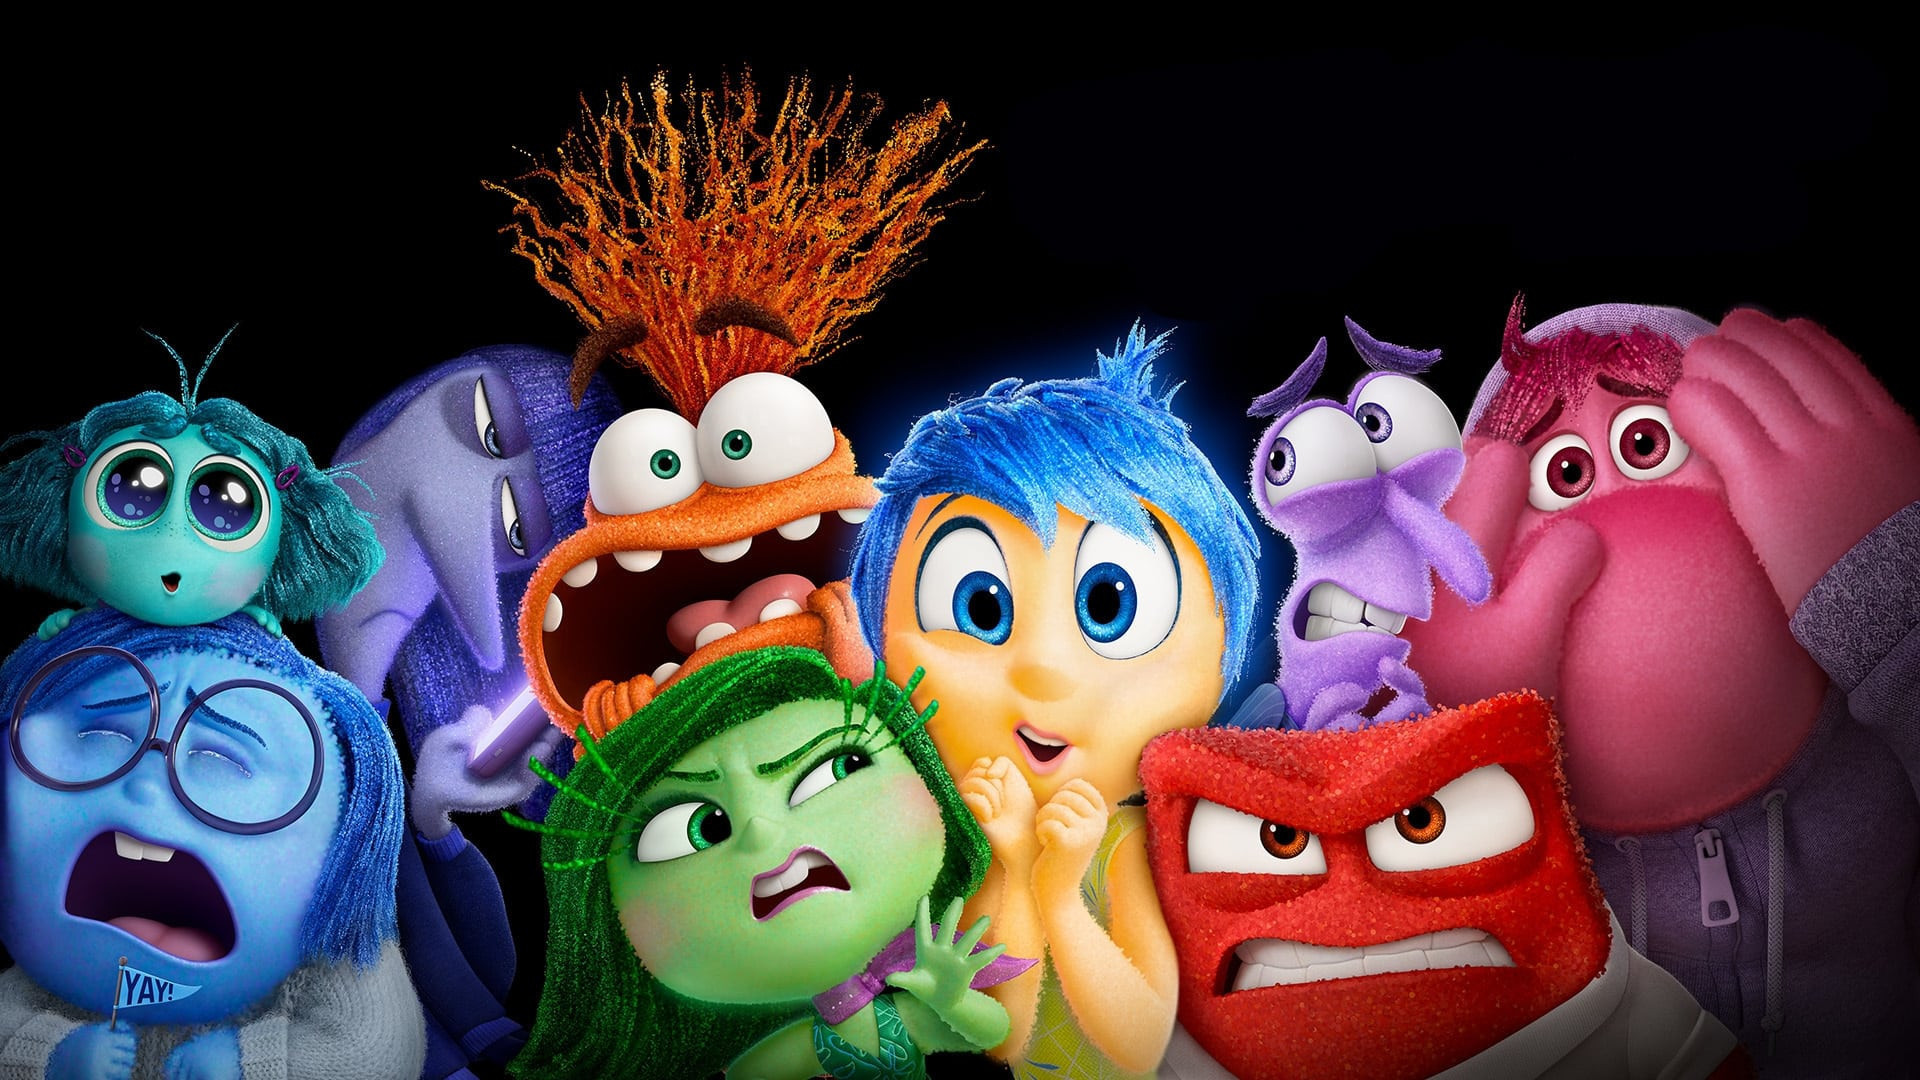 Com trama sobre os desafios da adolescência, filme "Divertida Mente 2" chega aos cinemas (Foto: Pixar/Divulgação)